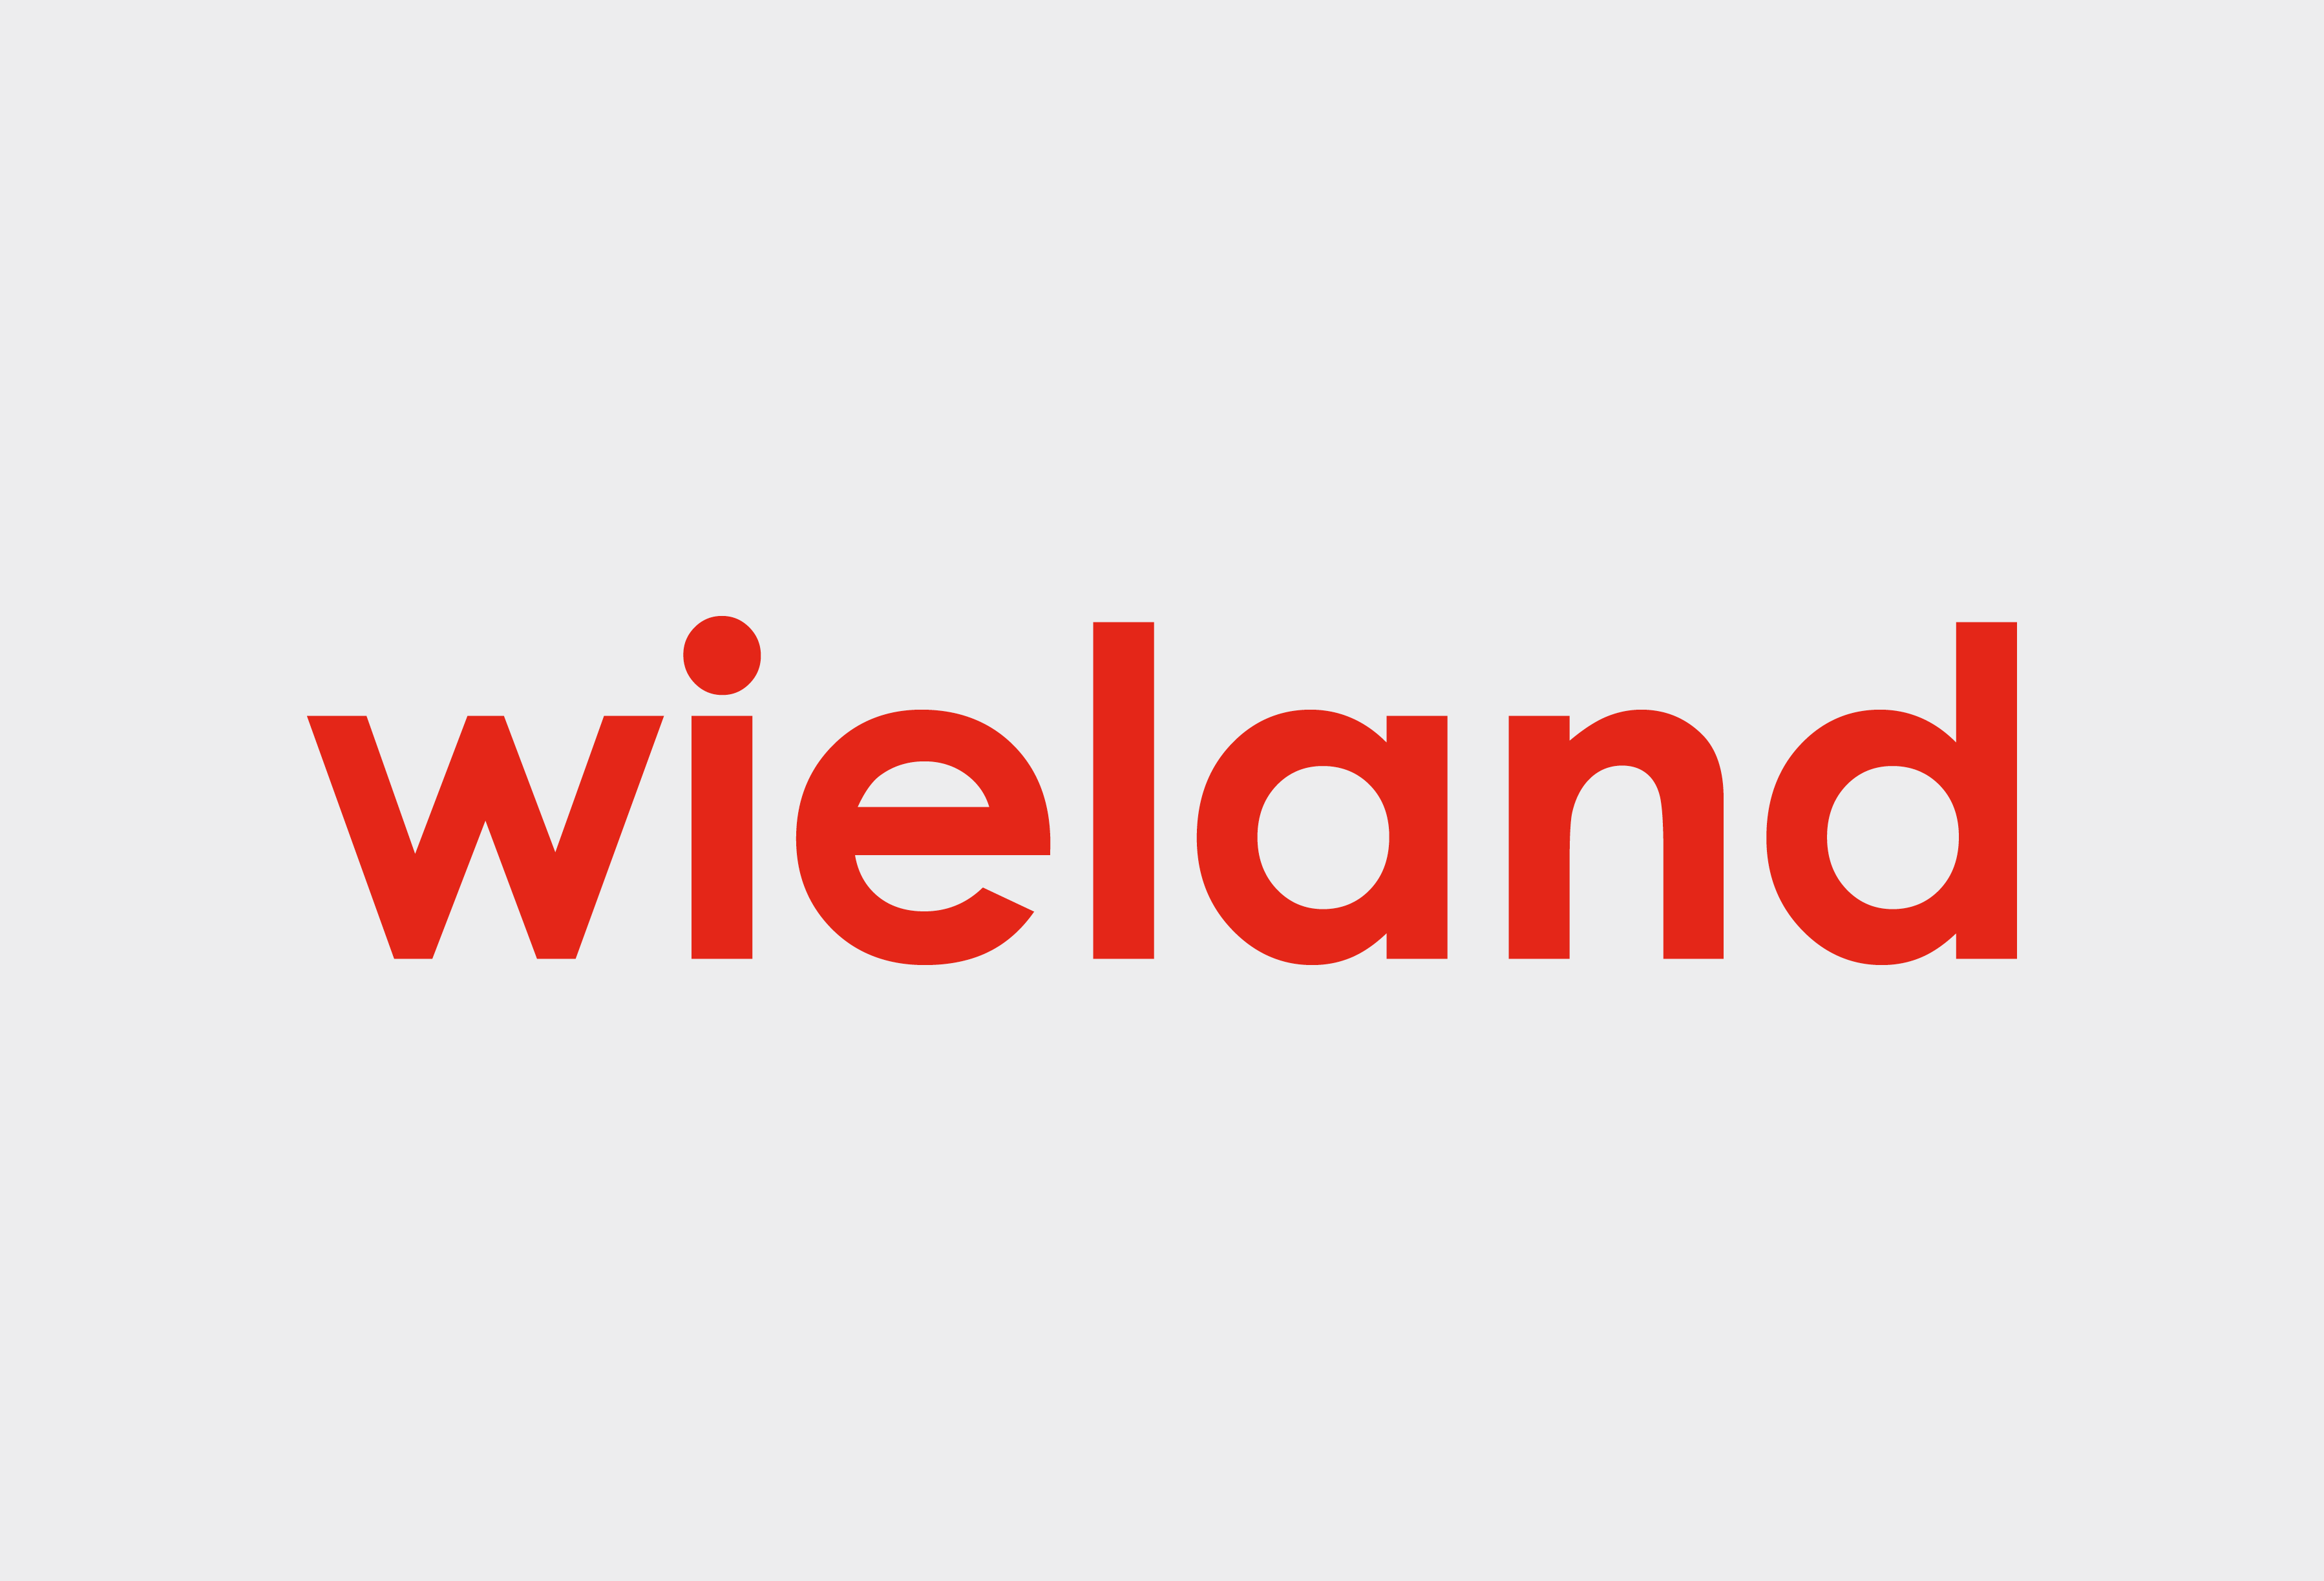 Logo von Wieland-Werke AG